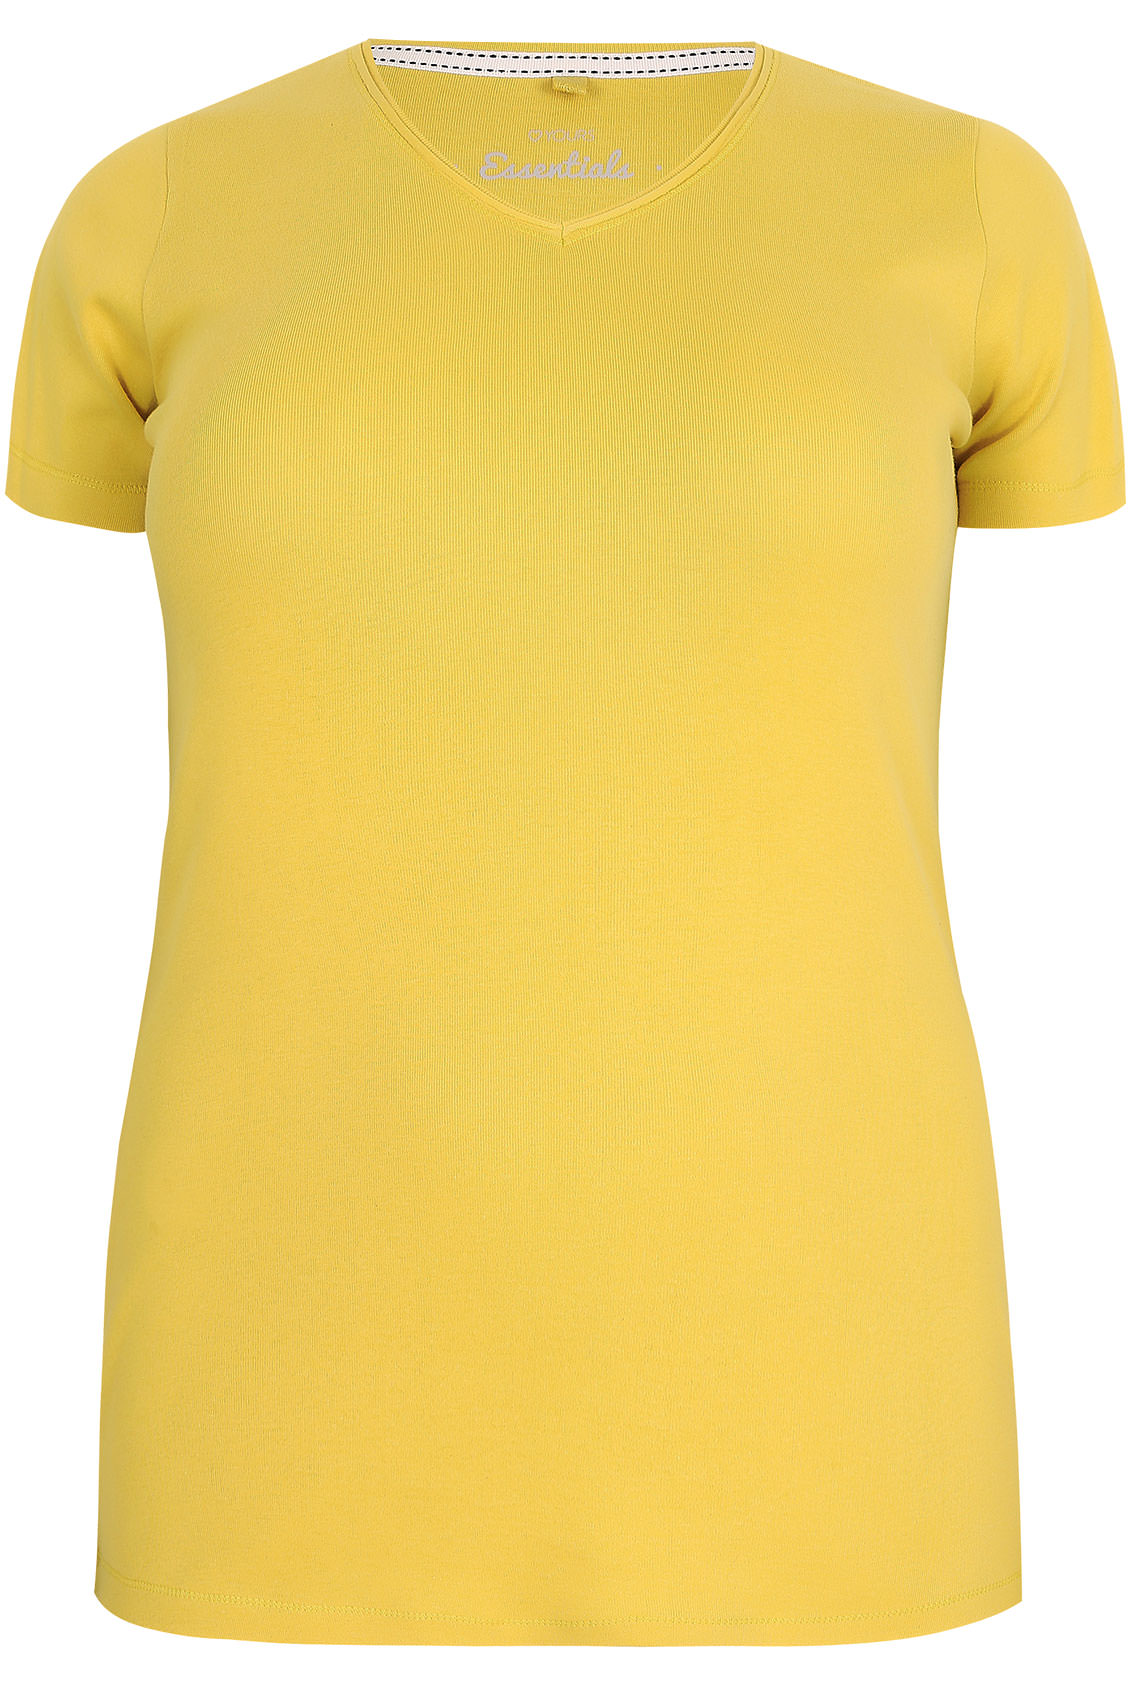 Yellow Short Sleeved V-Neck Basic T-Shirt, Plus size 16 to 36